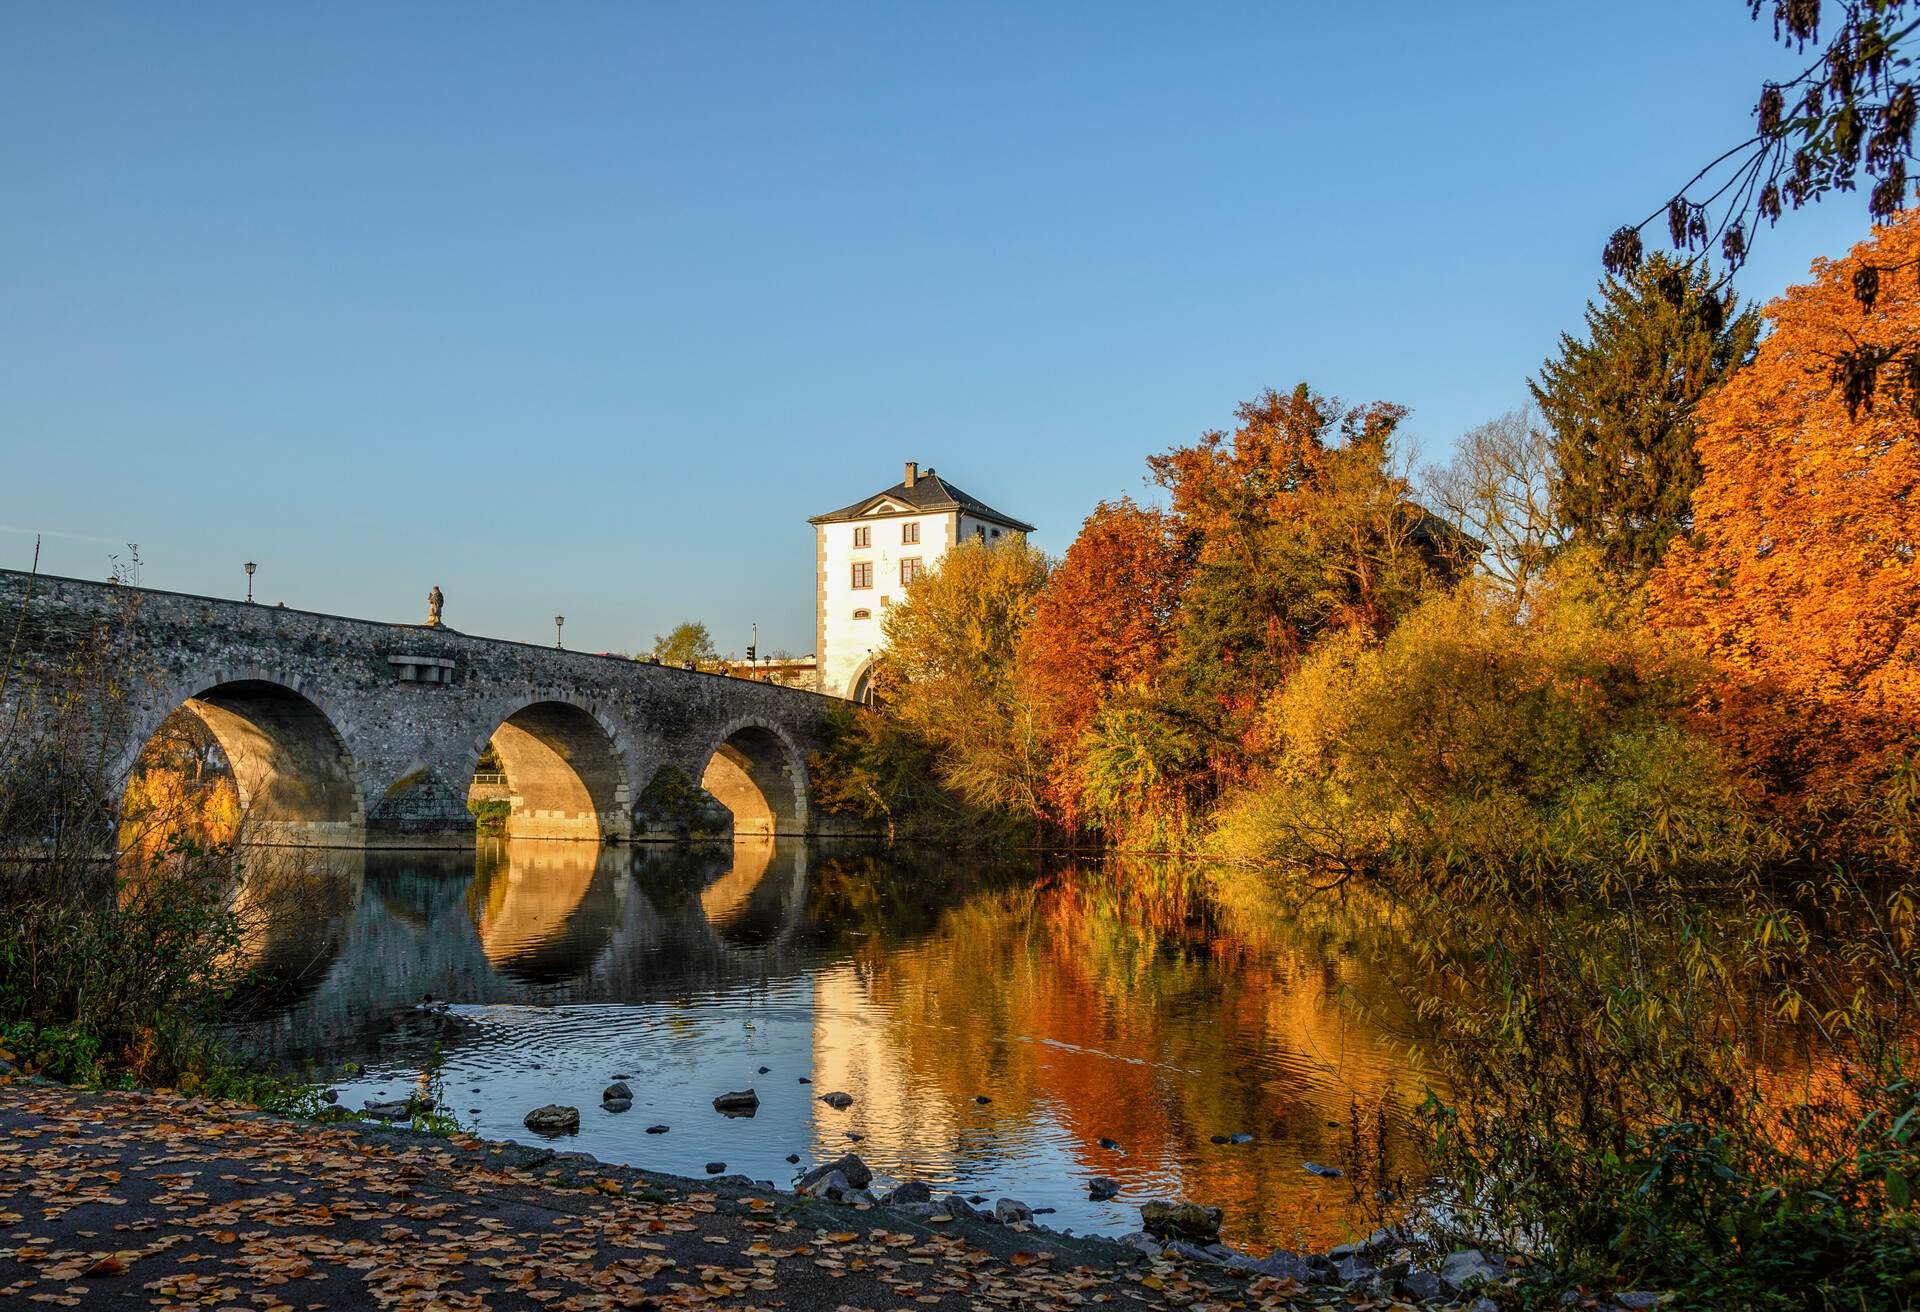 Old bridge in Limburg an der Lahn in autumn